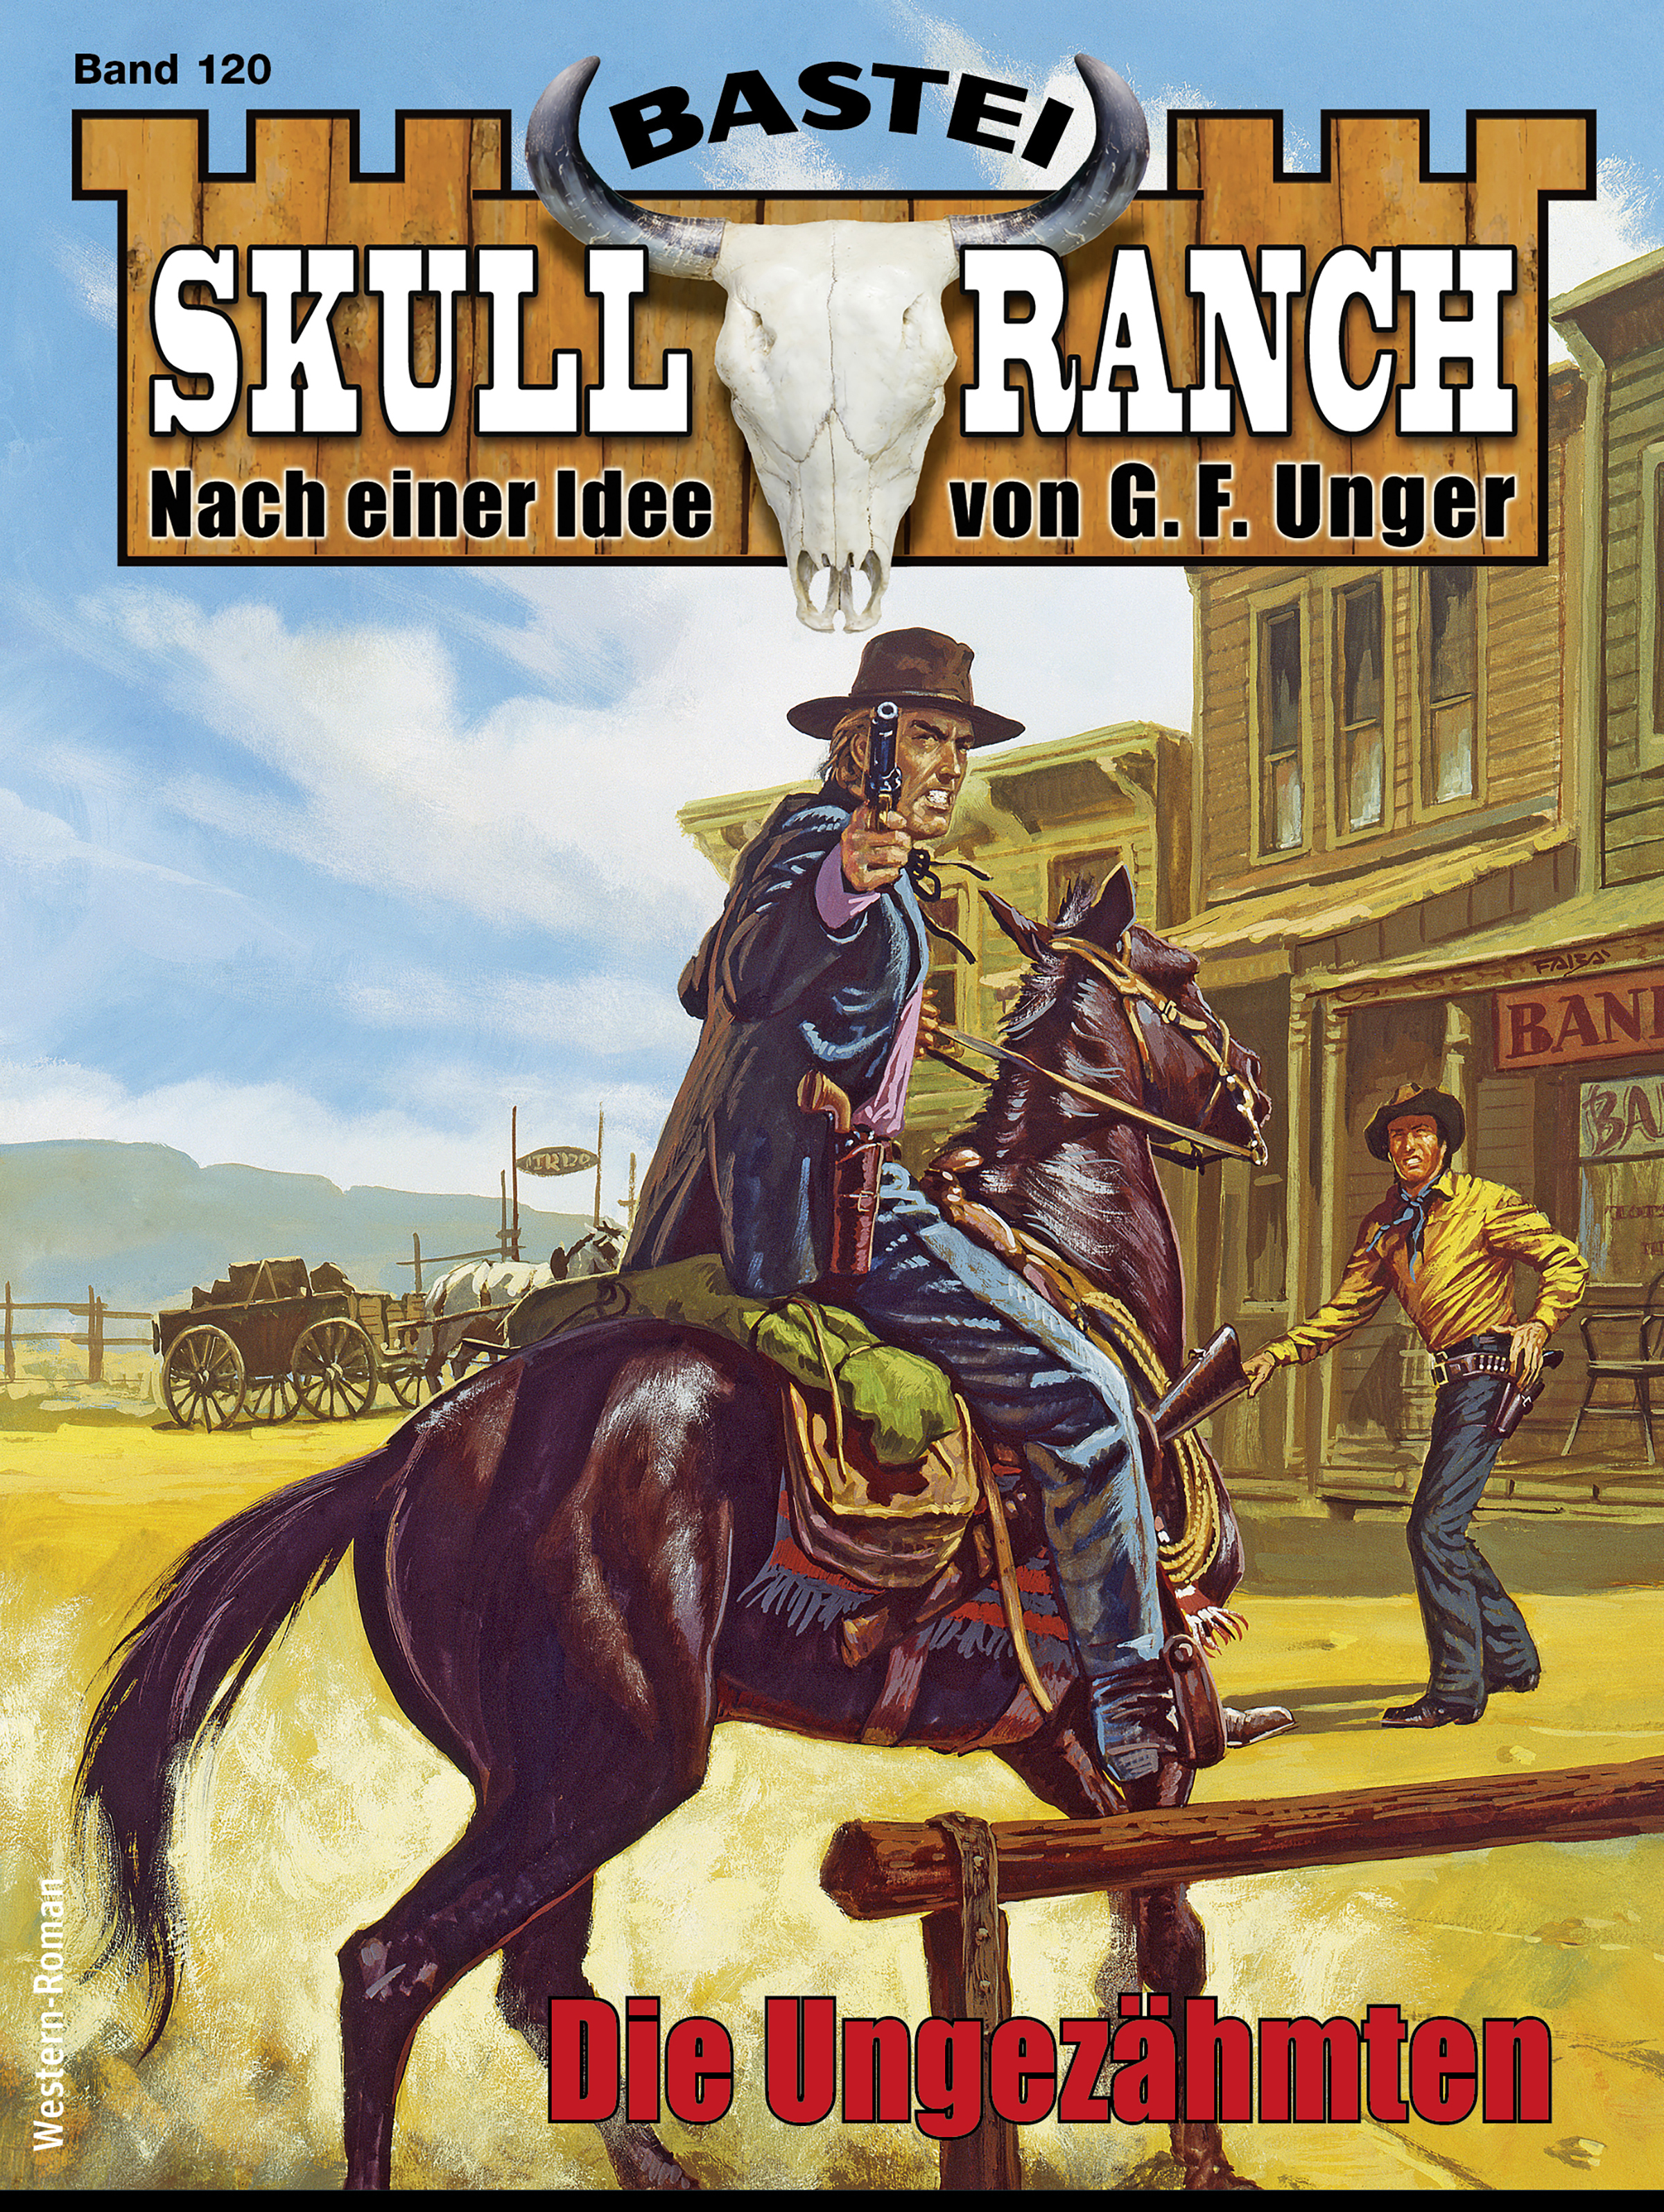 Skull-Ranch